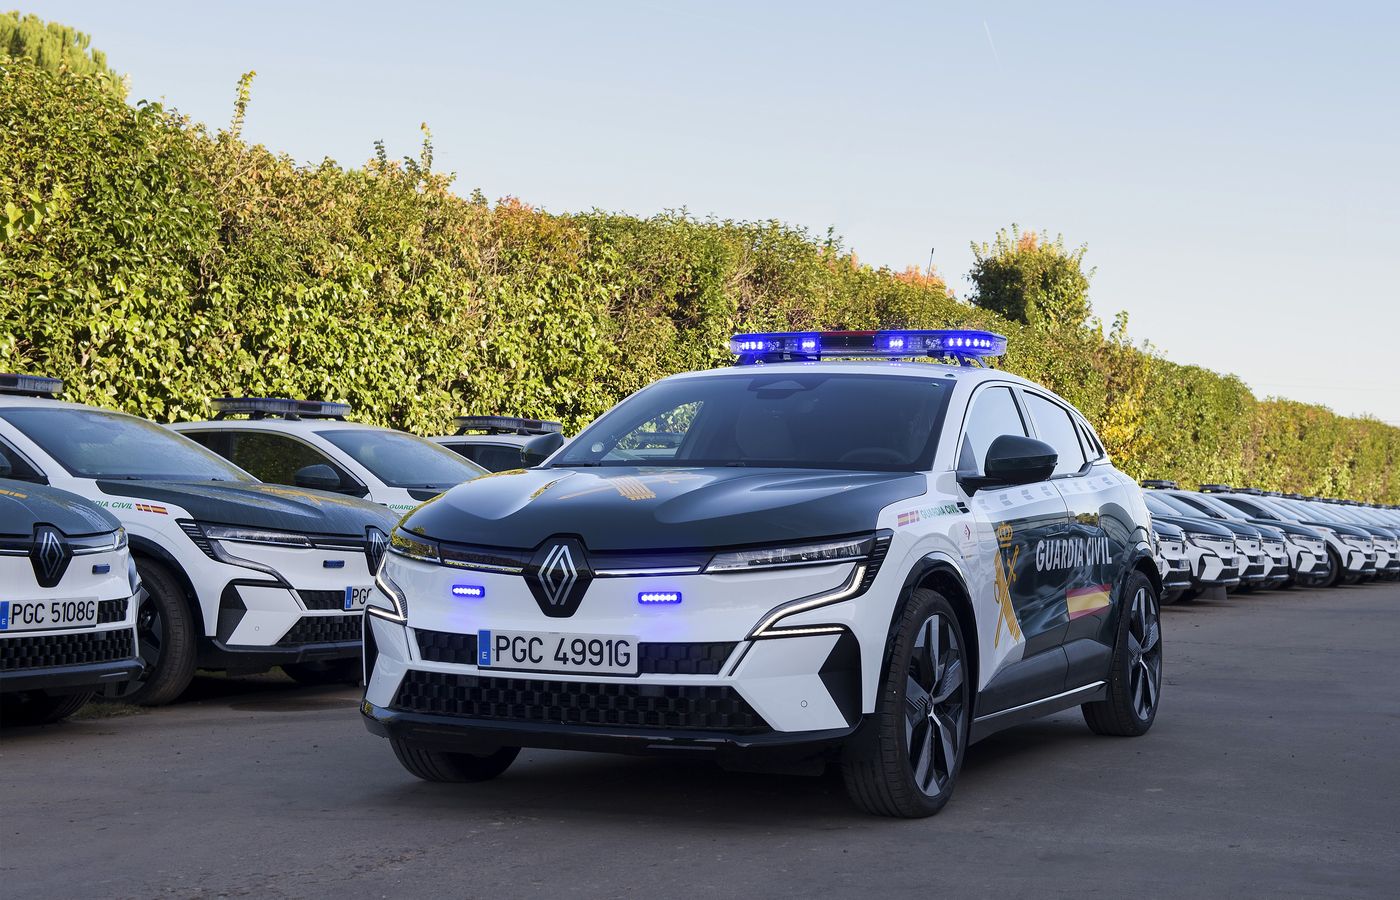 La Guardia Civil suma y sigue e incorpora 118 coches 100% eléctricos Renault Megane E-Tech a su flota como parte del plan de transición energética